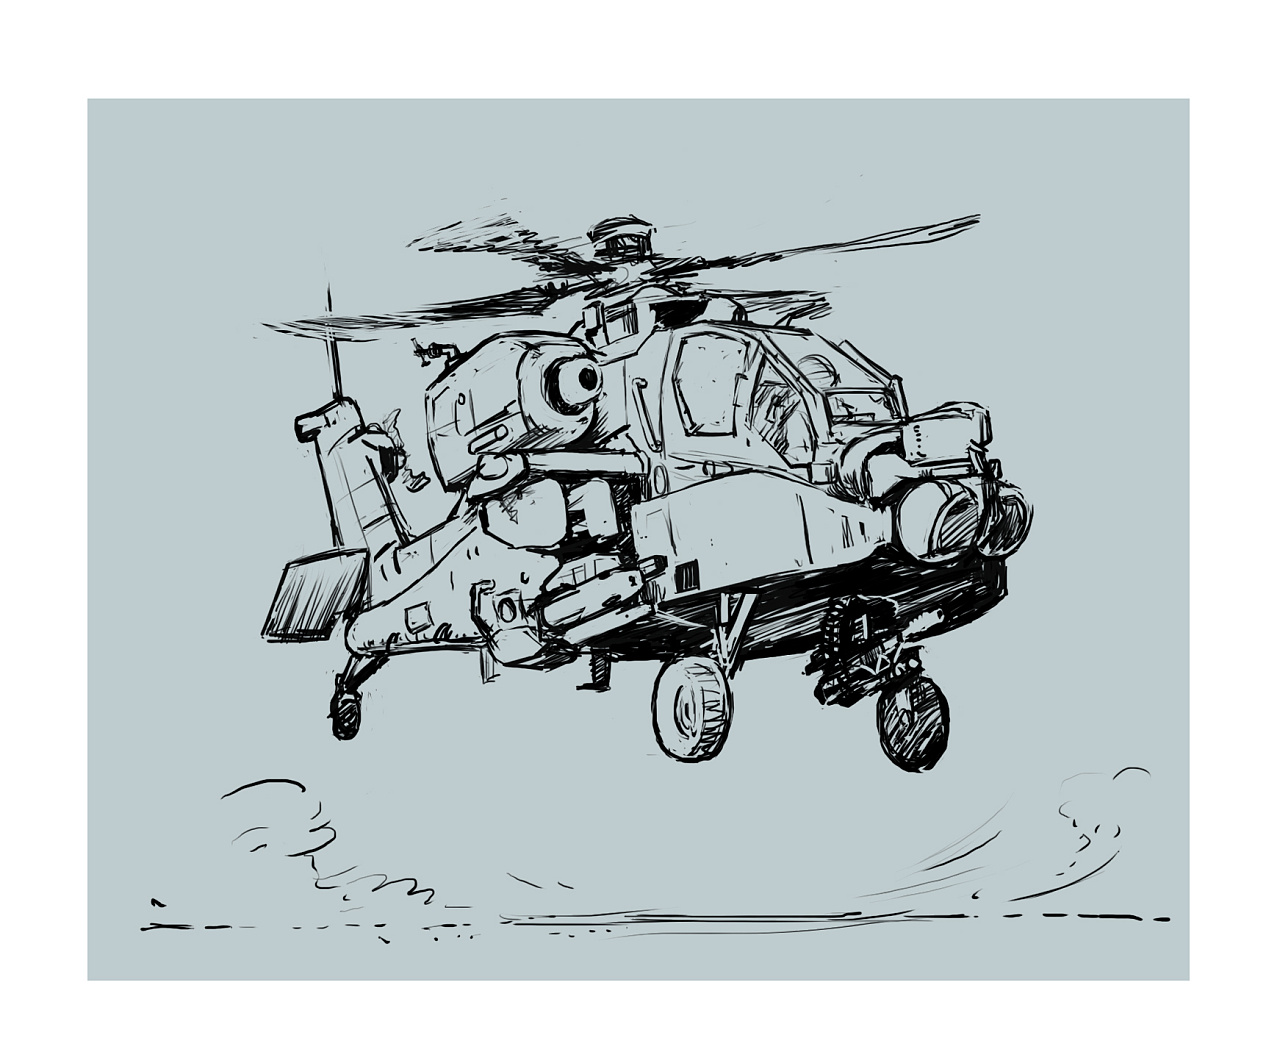 阿帕奇武装直升机画画图片